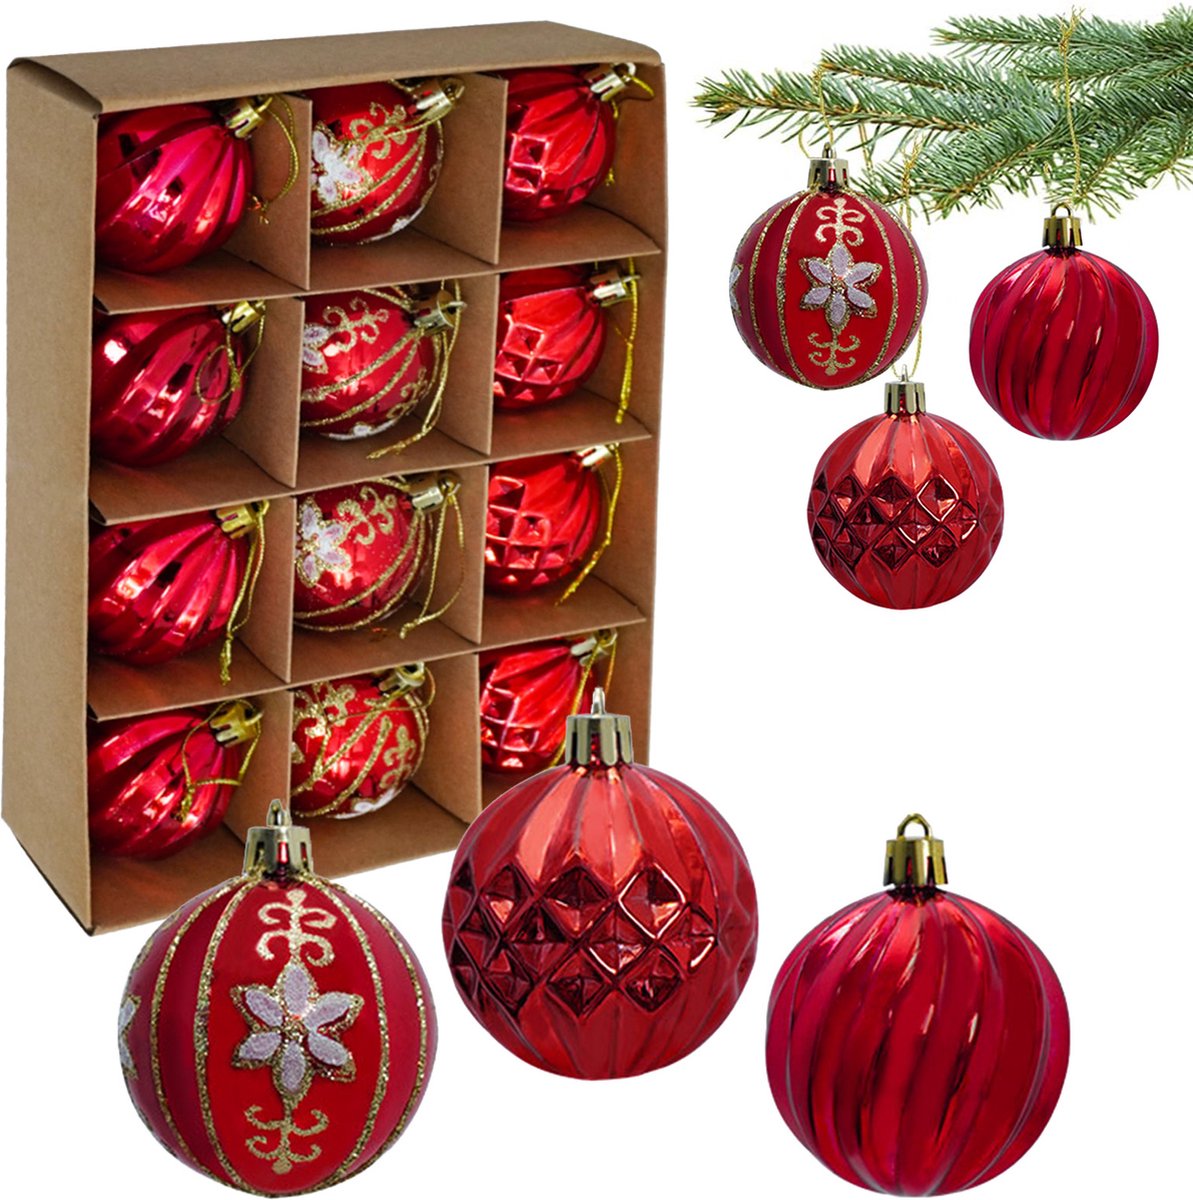 Uten - Kerstballen Plastic - kerstboom versiering - Christmas Gifts - kerstballen set - 12 stuks - kerstboom ballen - Ø6cm - rood